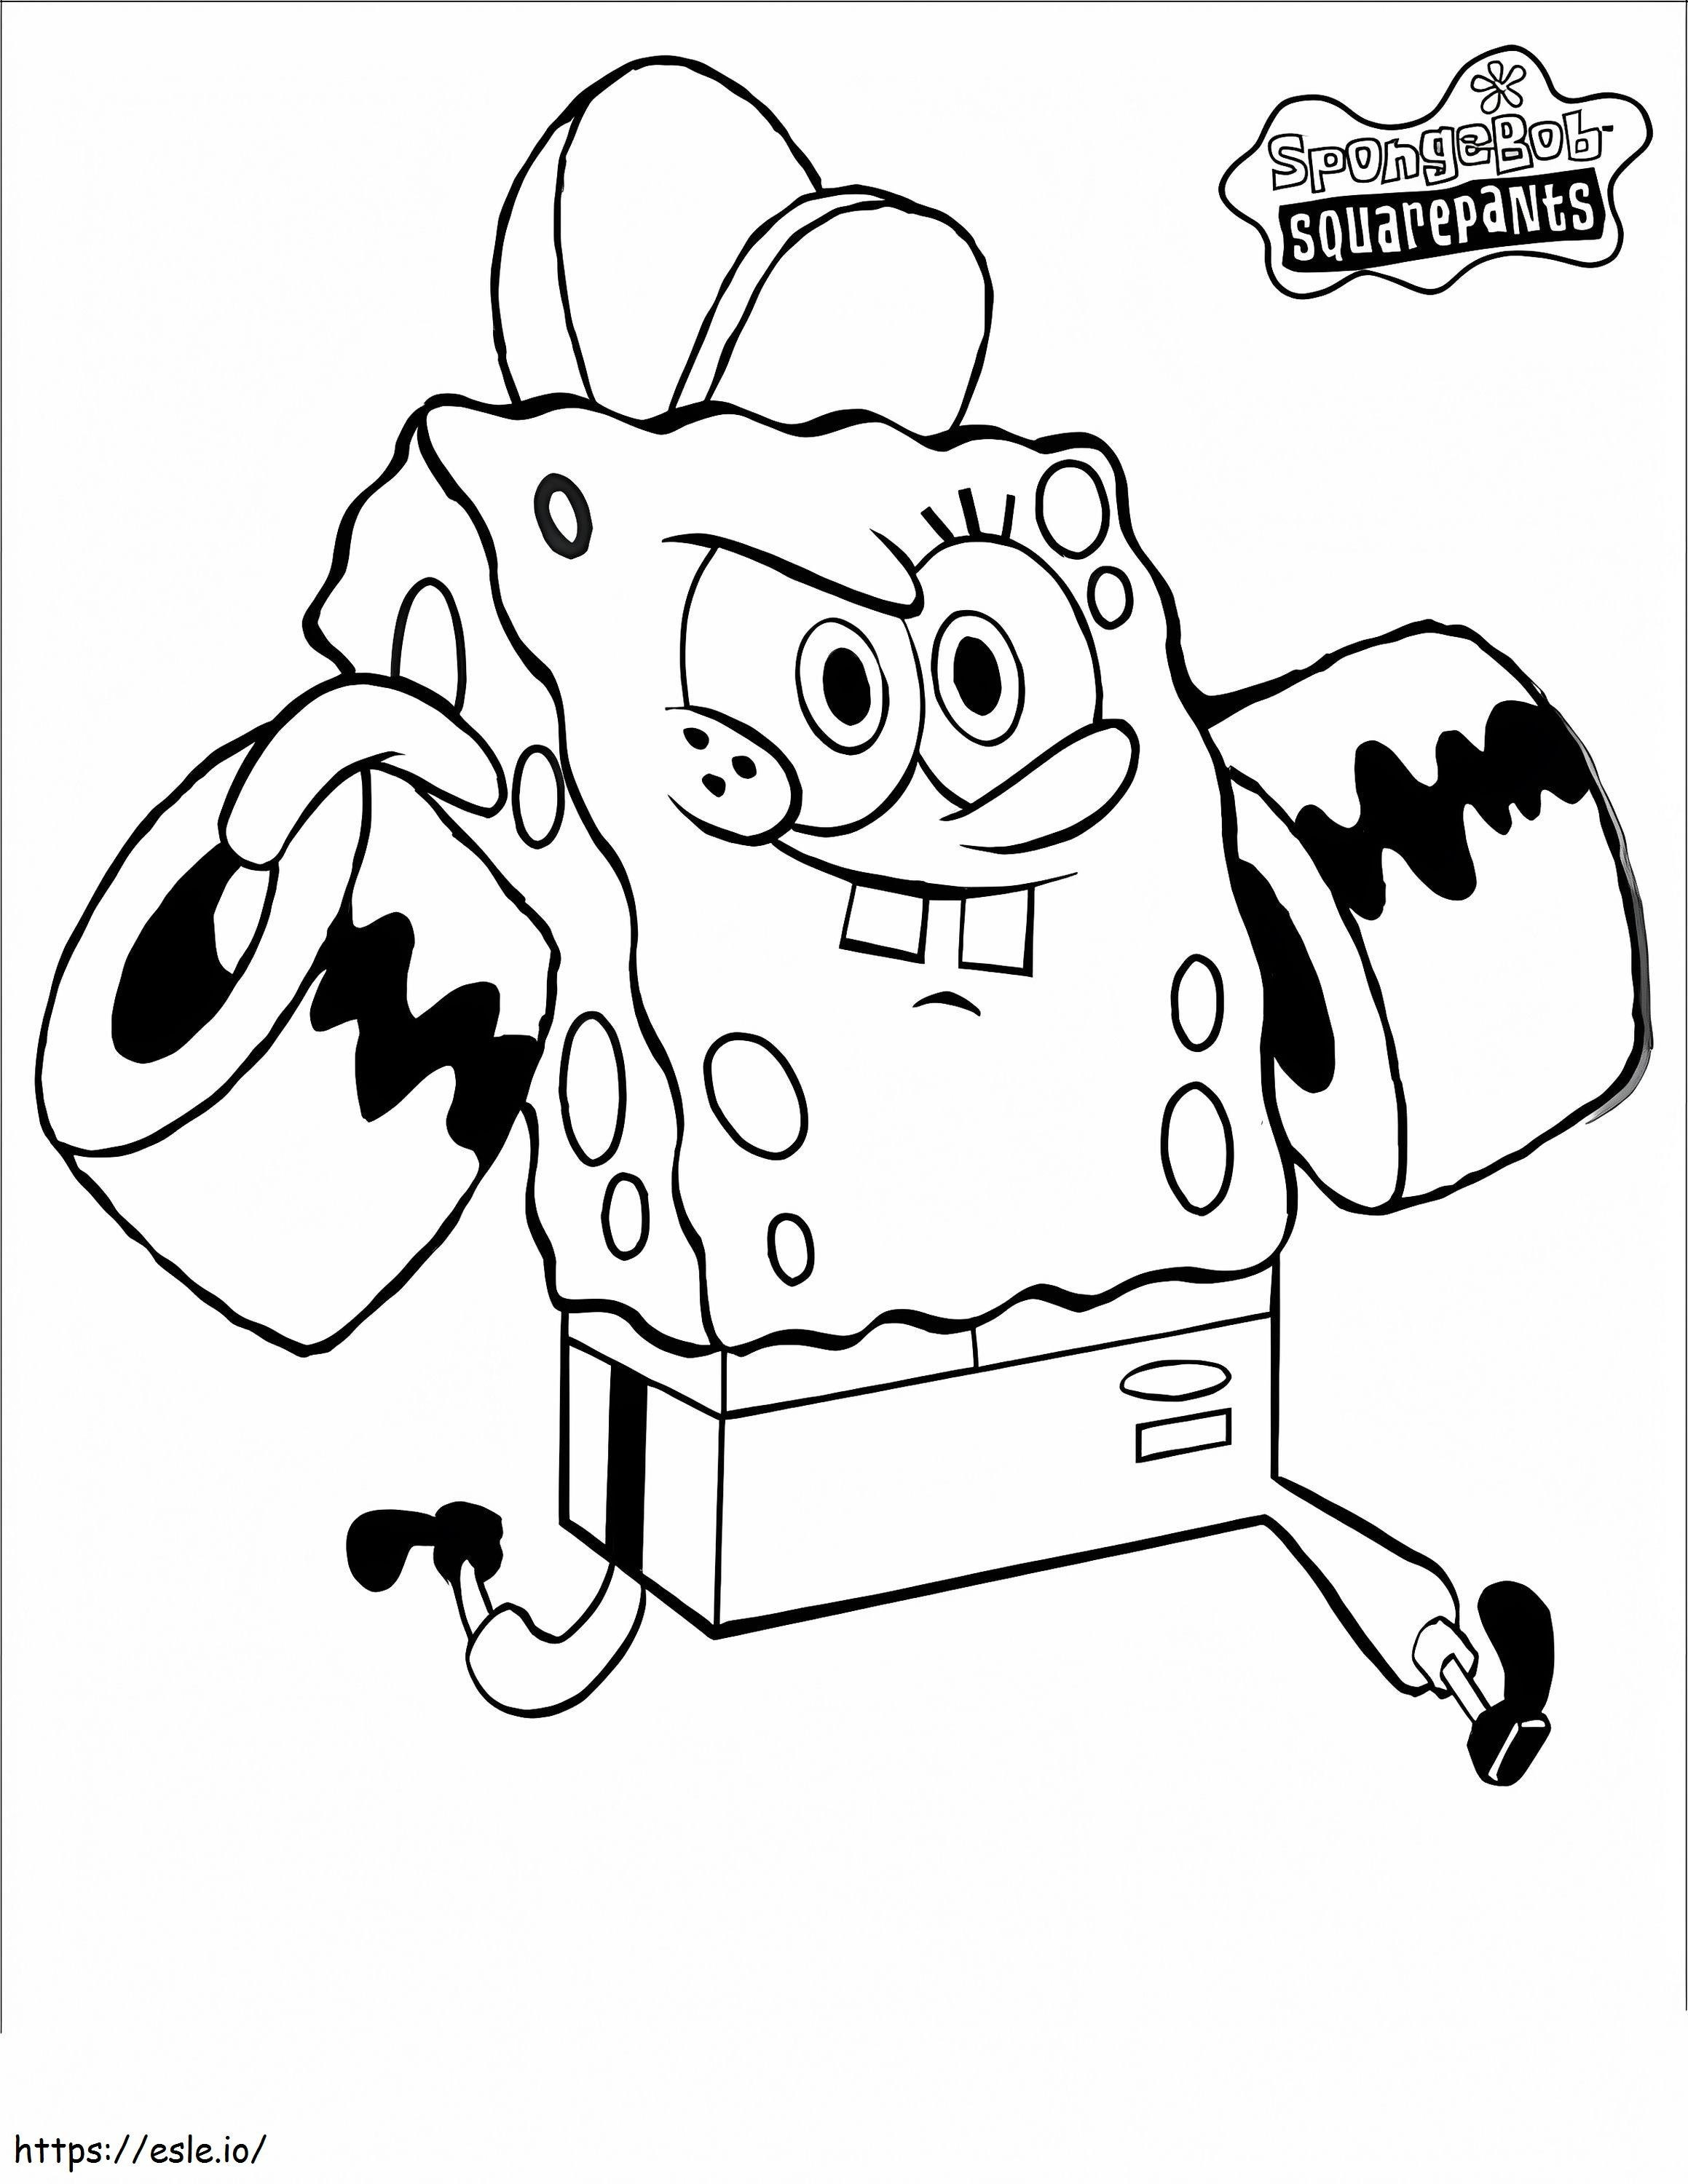 Allenamento di SpongeBob da colorare